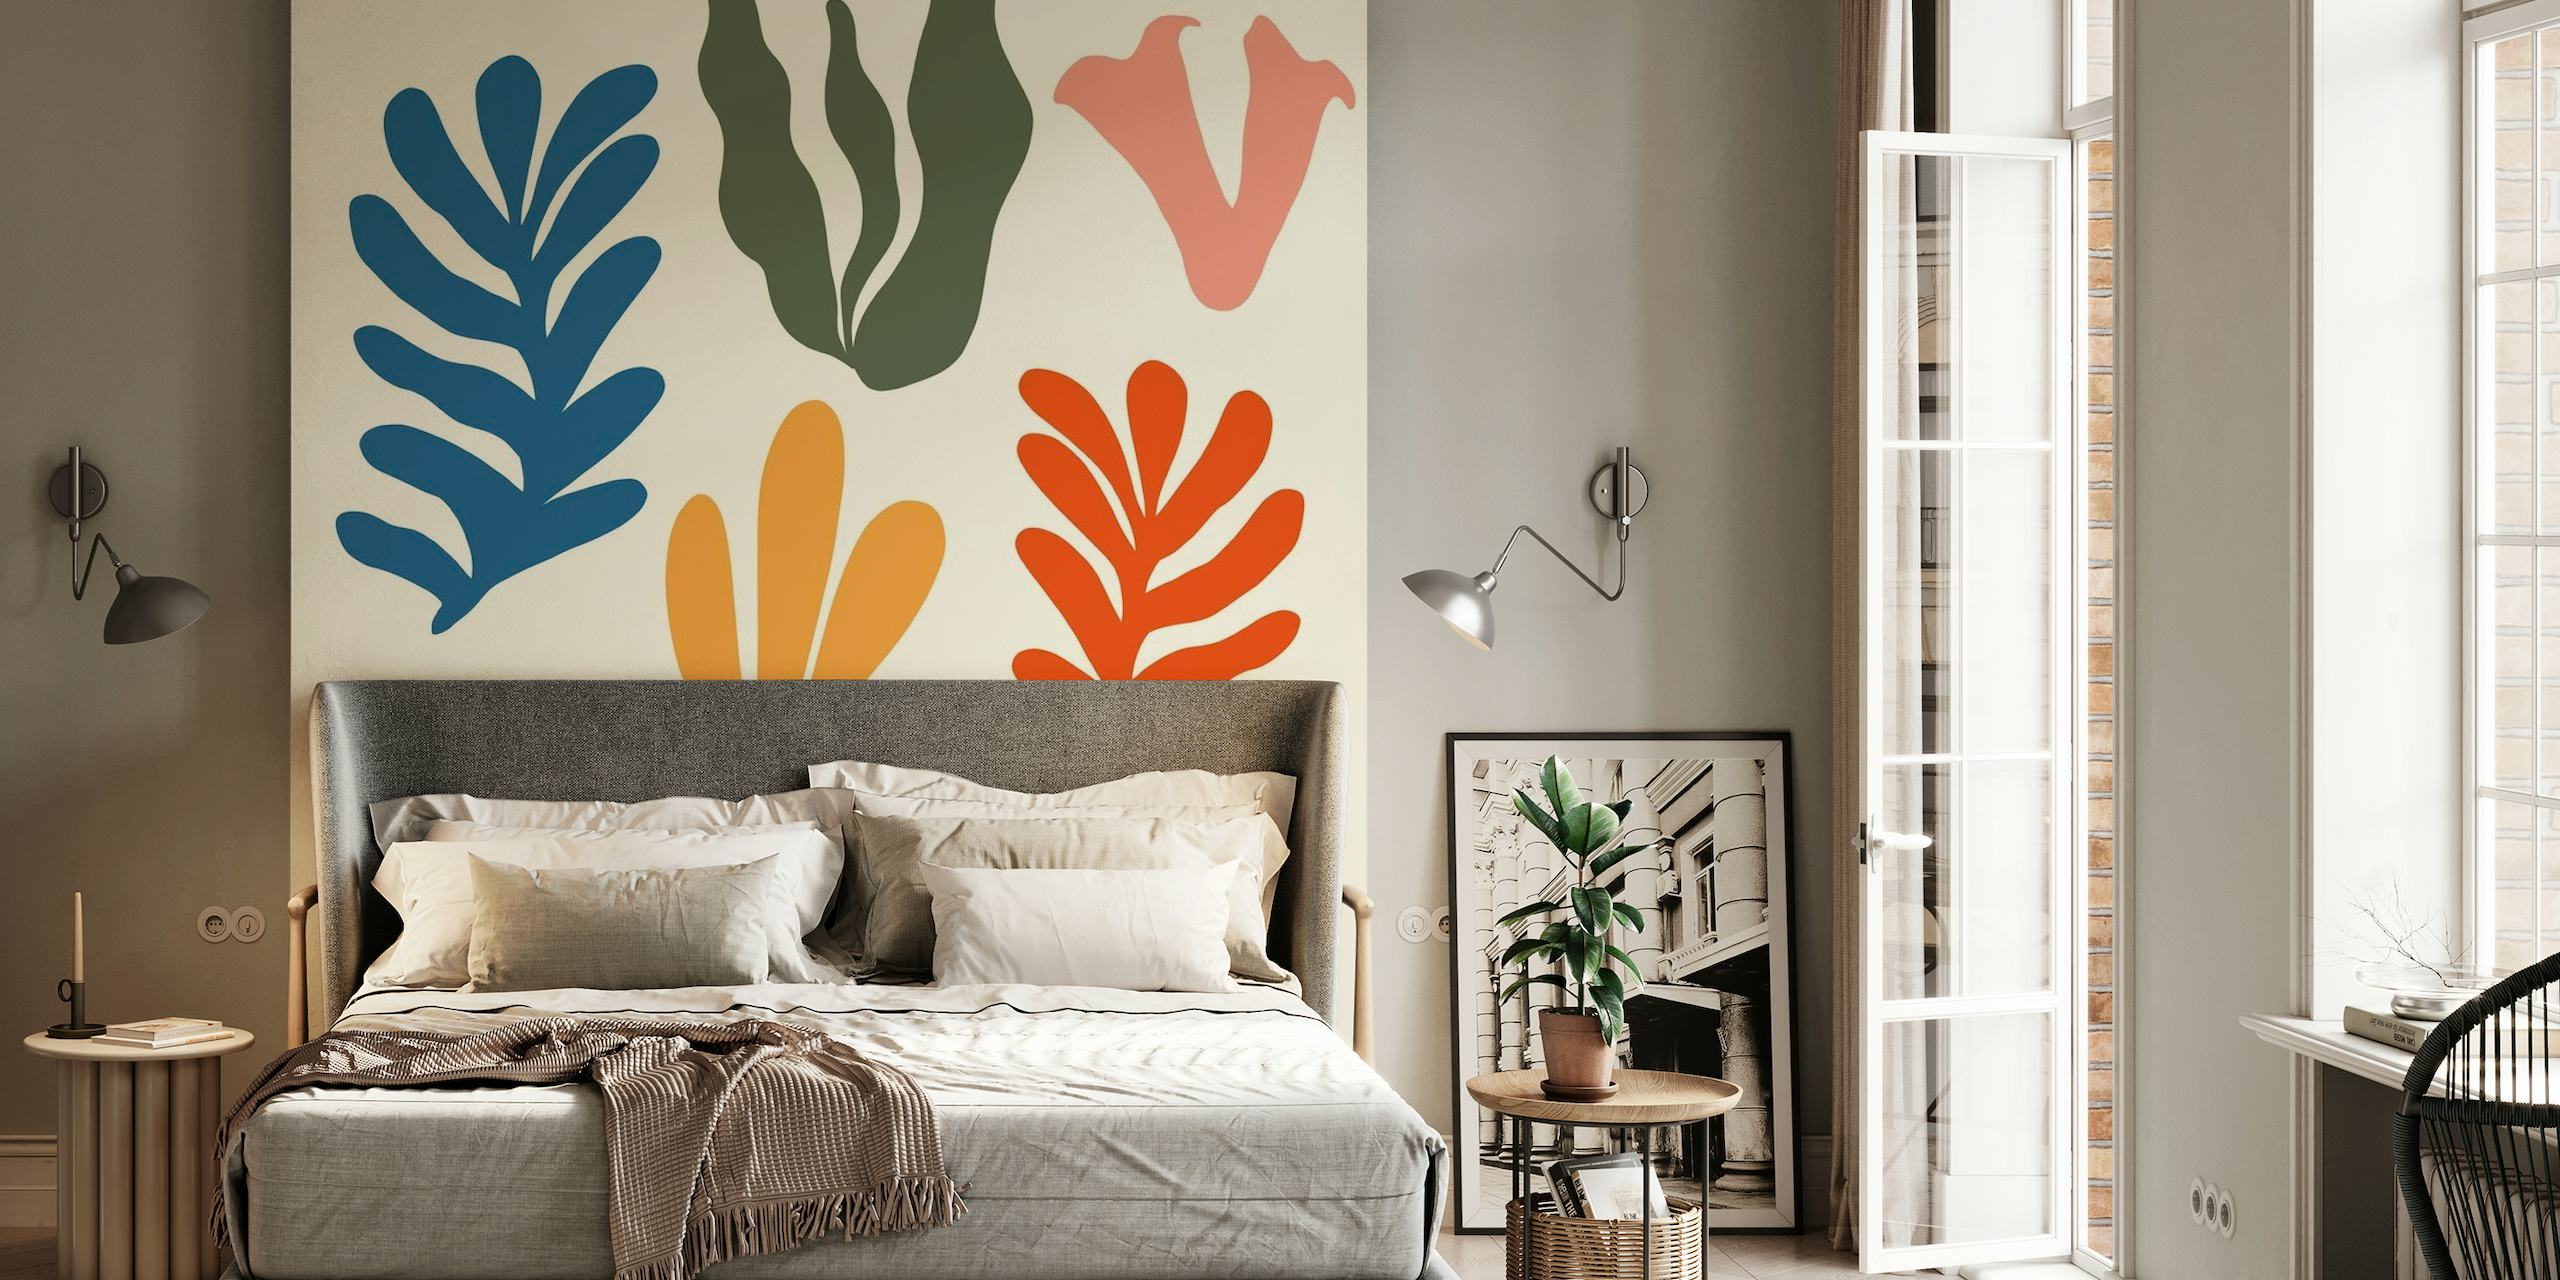 Gestileerde abstracte zeegras muurschildering met een verscheidenheid aan kleurrijke vormen op een neutrale achtergrond